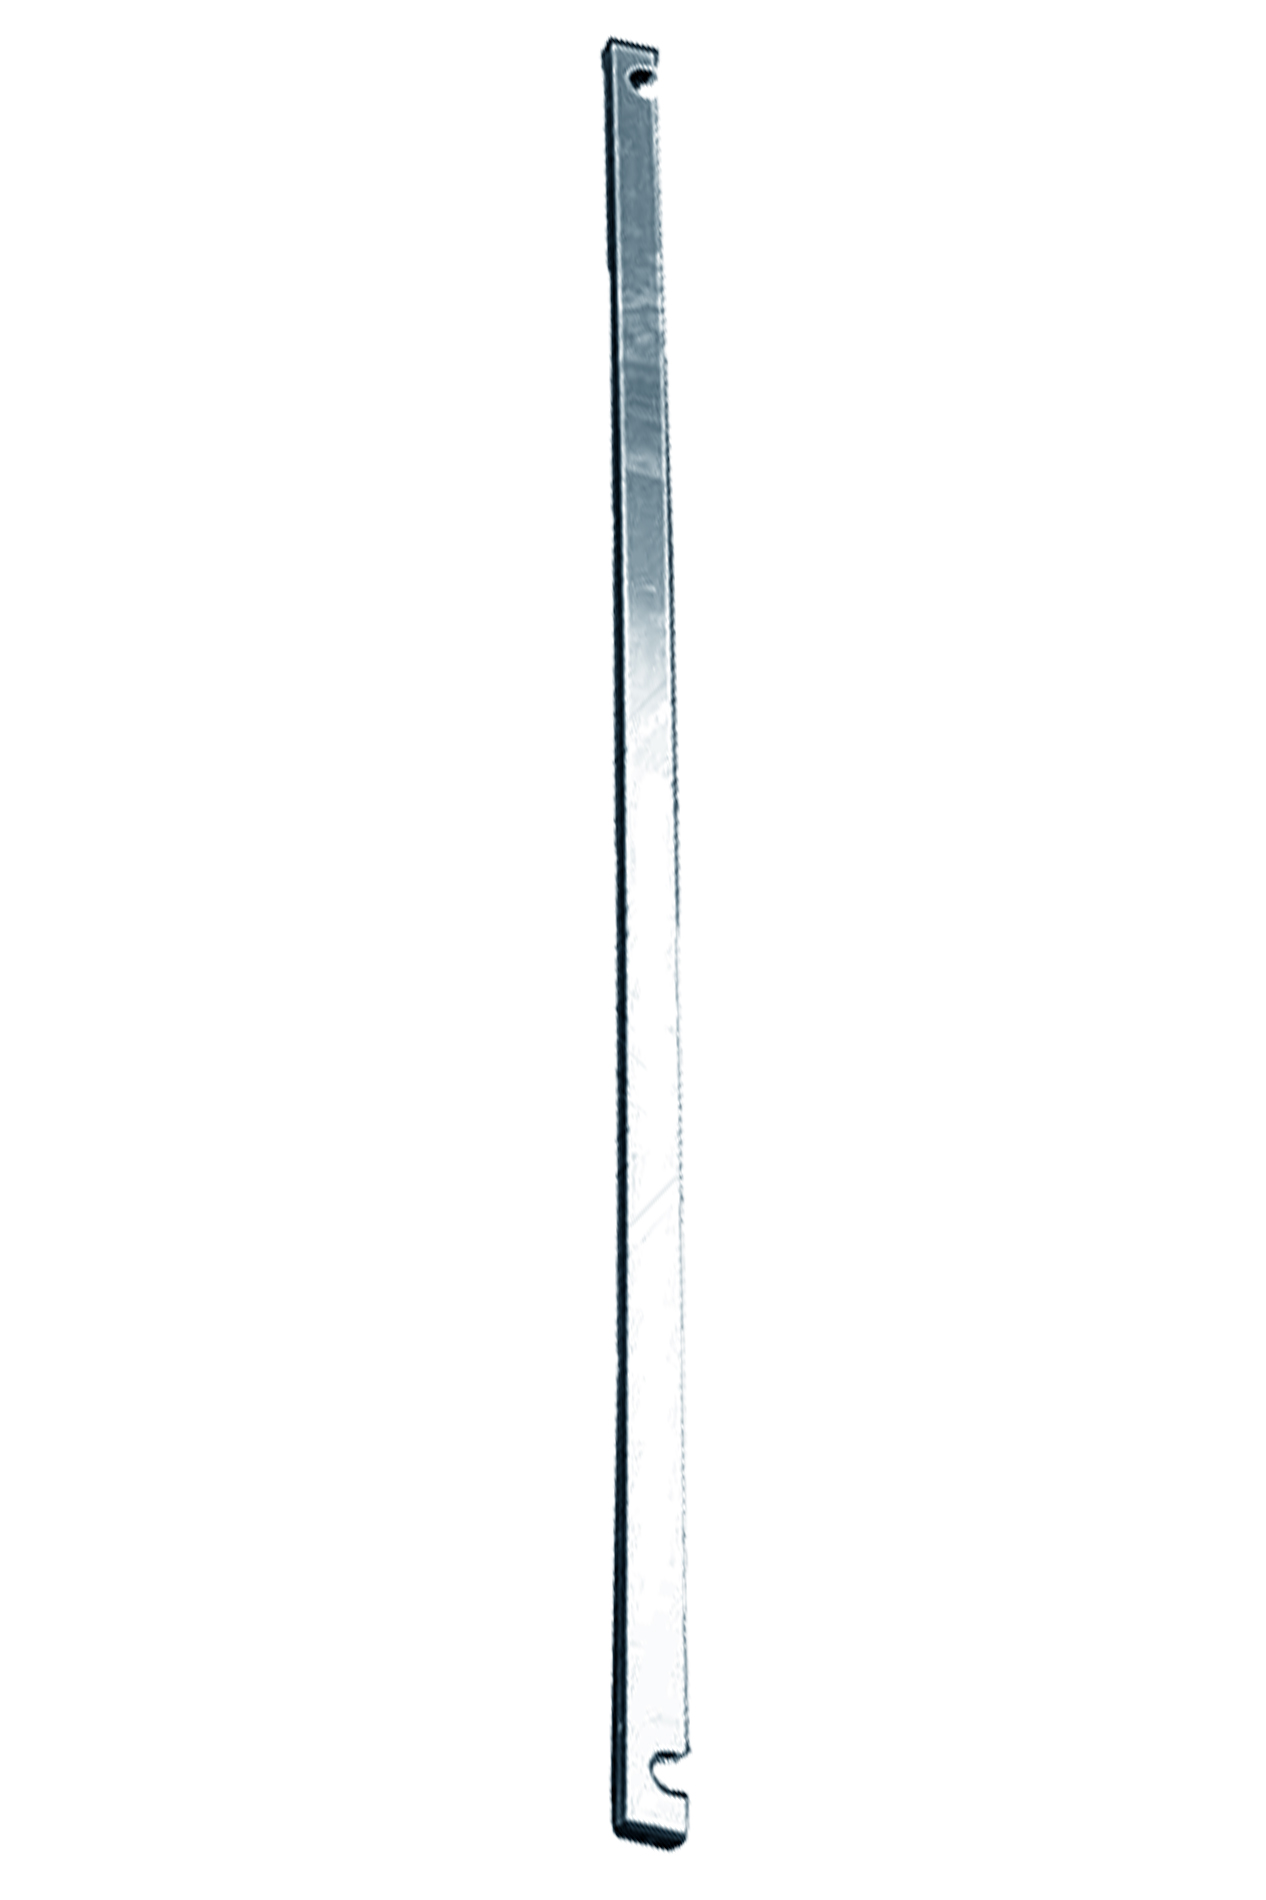 Дополнительное изображение Stabilo серии 1000 рабочая высота 12,2 м, размер площадки (2x0.75 м)